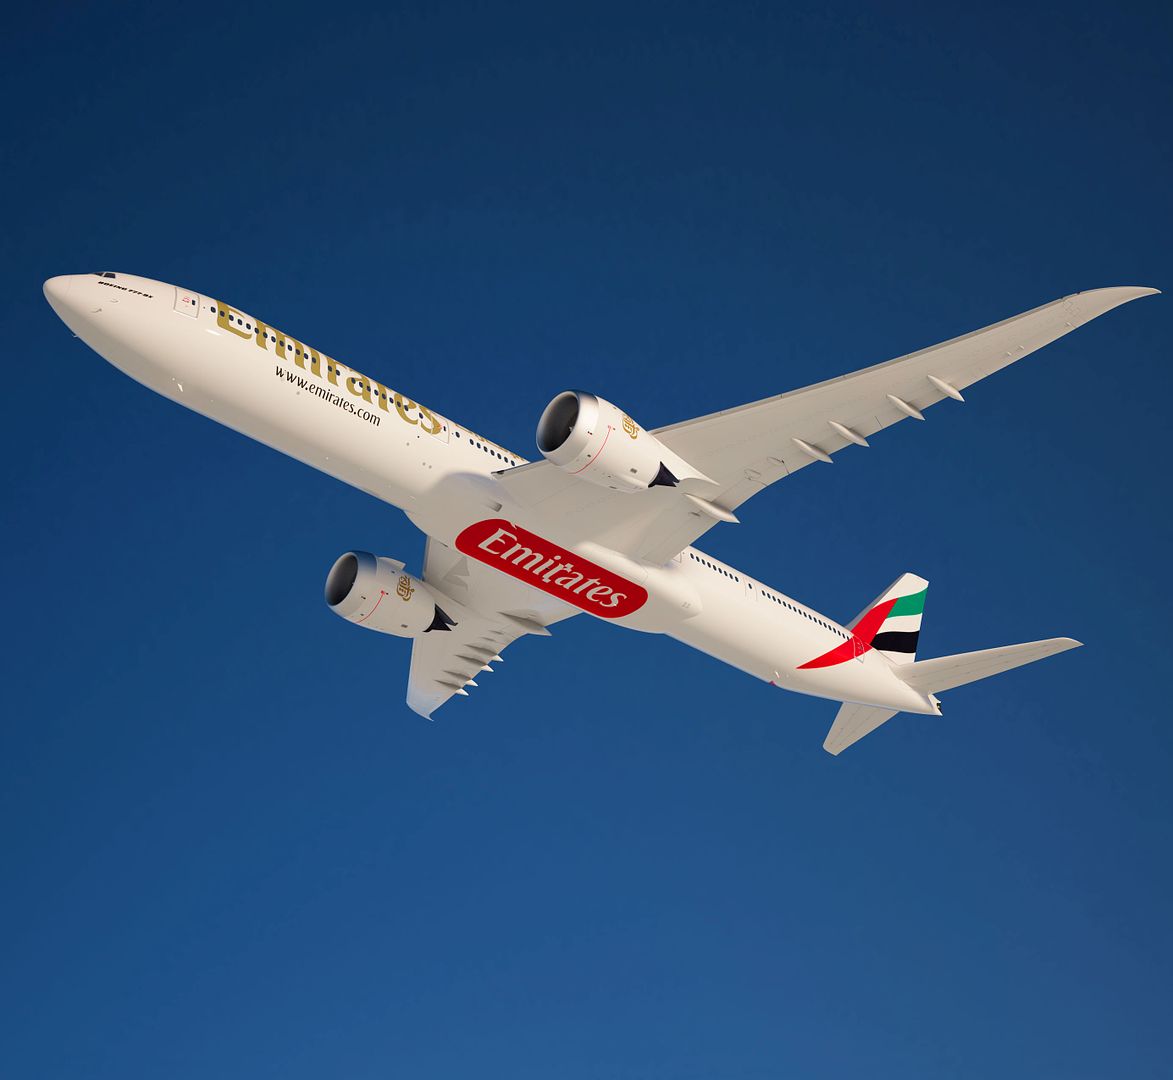 Emiratesconfirms777Xorder